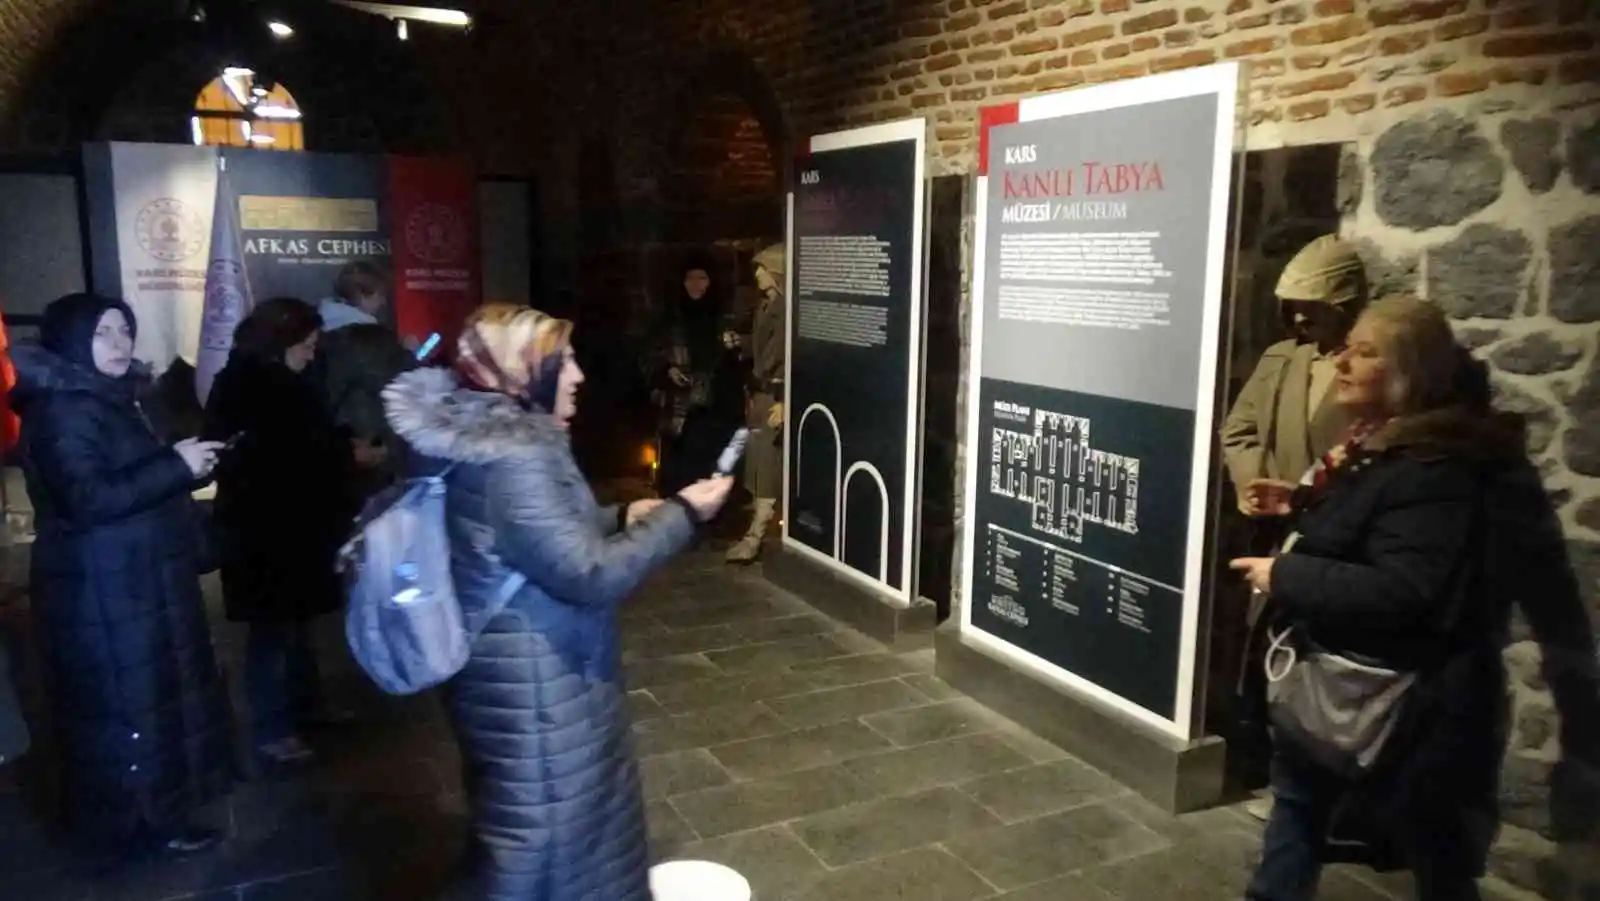 Kars’taki interaktif müze yoğun ilgi görüyor
